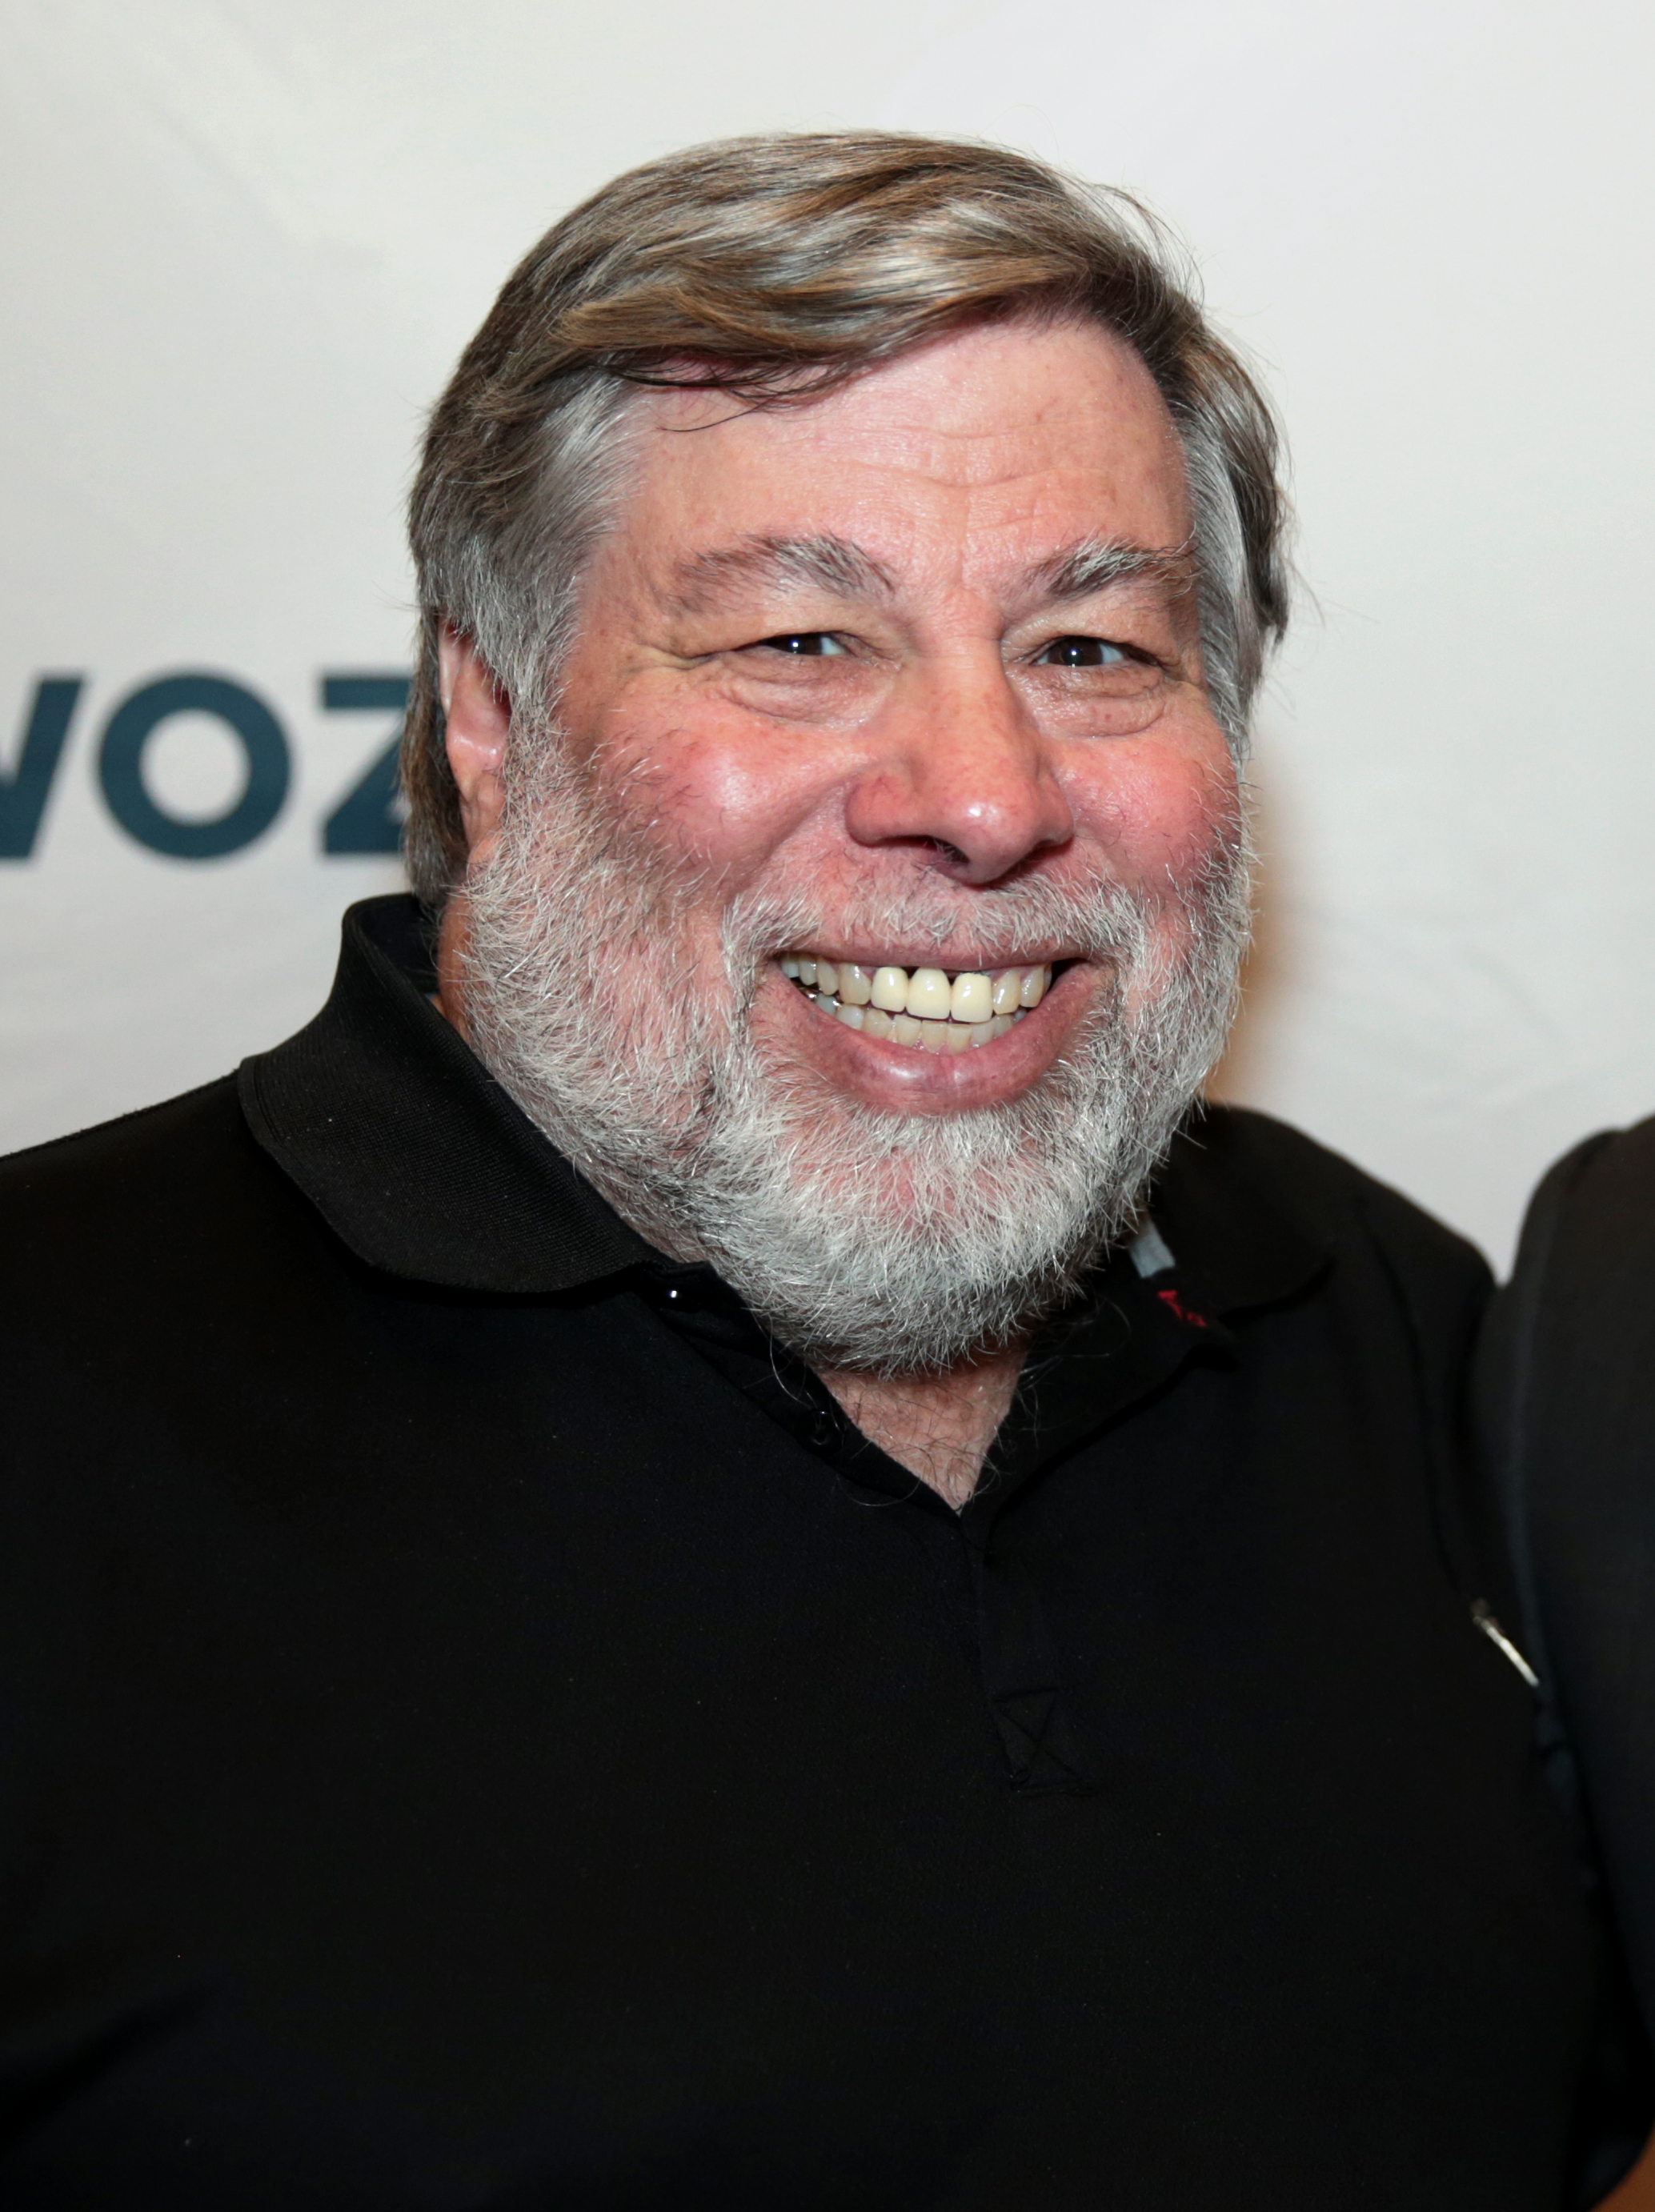 Poet Steve Wozniak